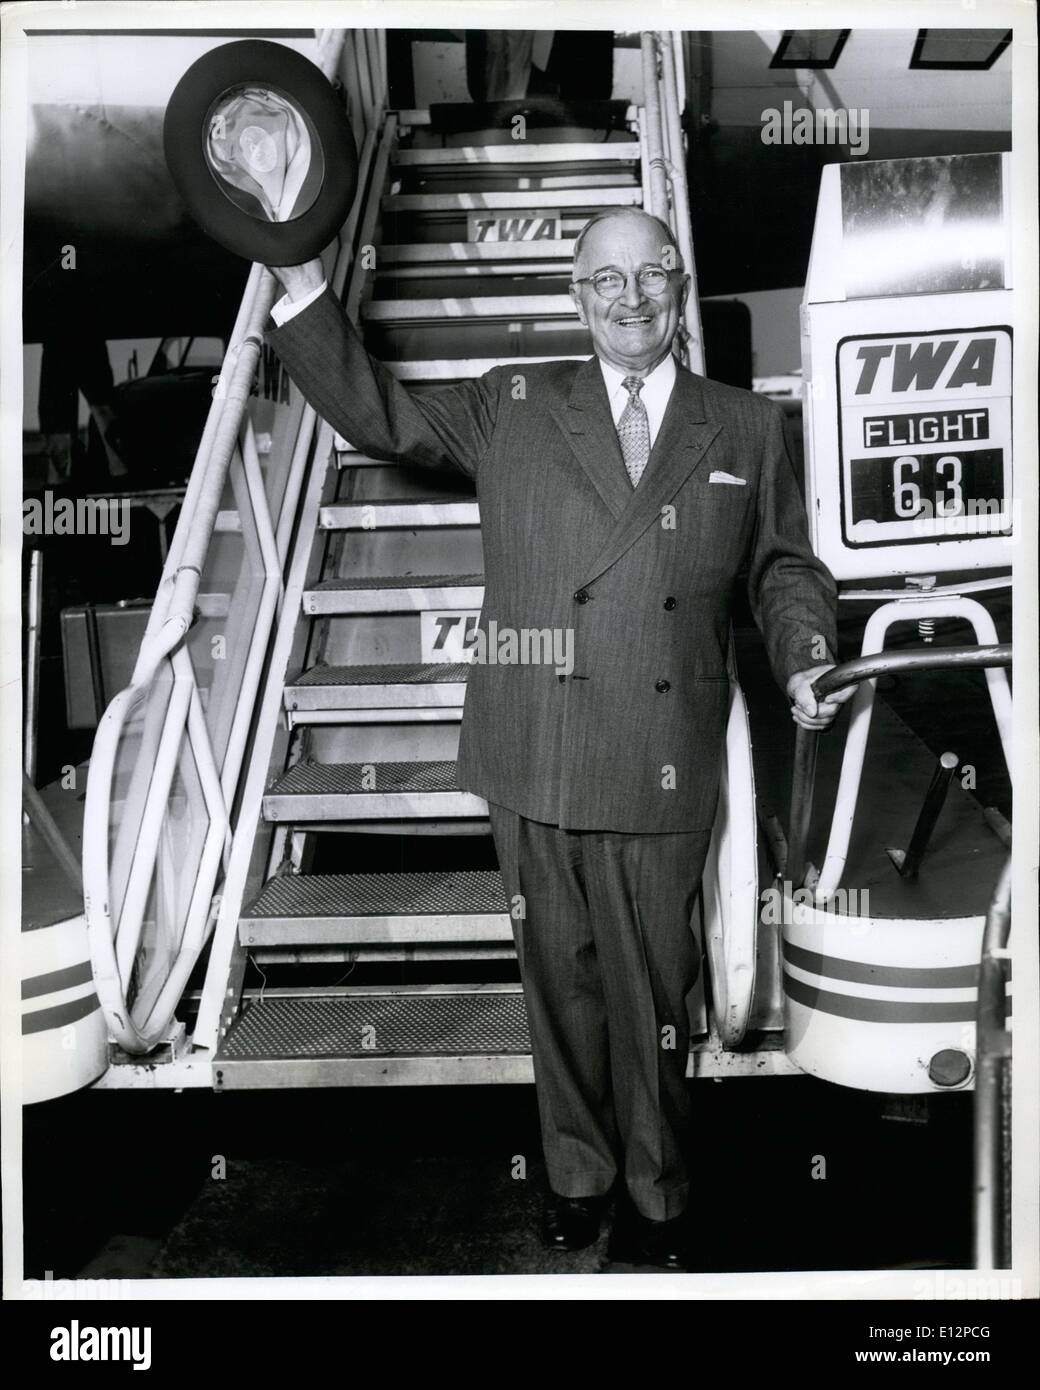 24 février 2012 - L'ancien président Harry S. Truman Comités un TWA huit aujourd'hui à Kansas City, où il consacrera demain un centre commercial de grand view, n° appelé Truman's Corners. Banque D'Images